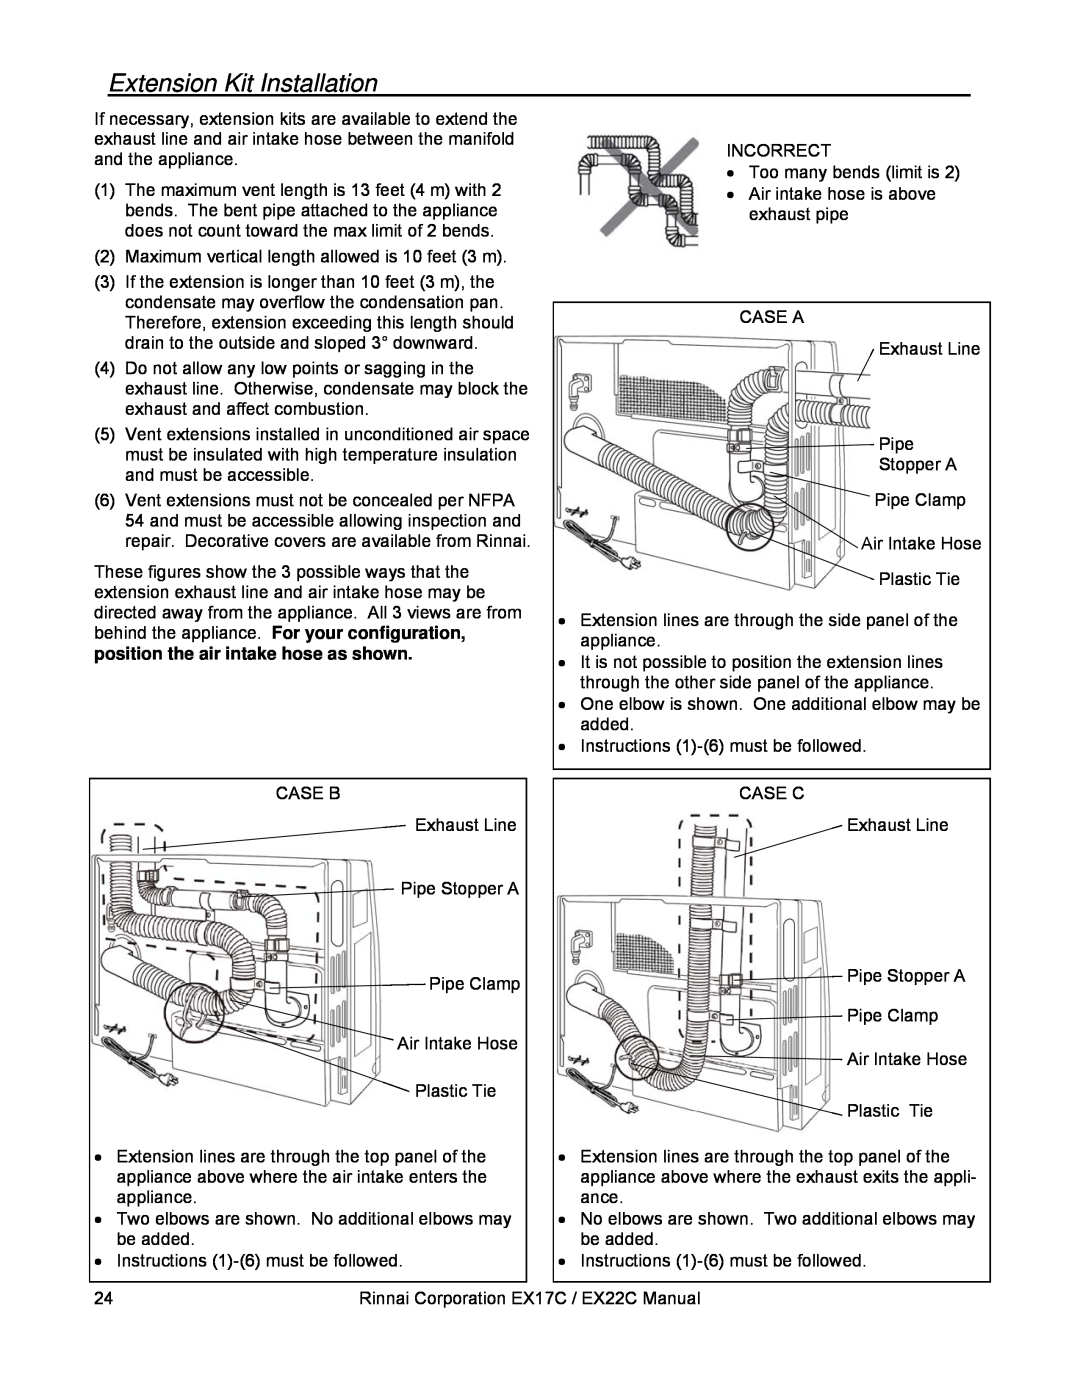 Rinnai EX17C, EX22C installation manual Extension Kit Installation 